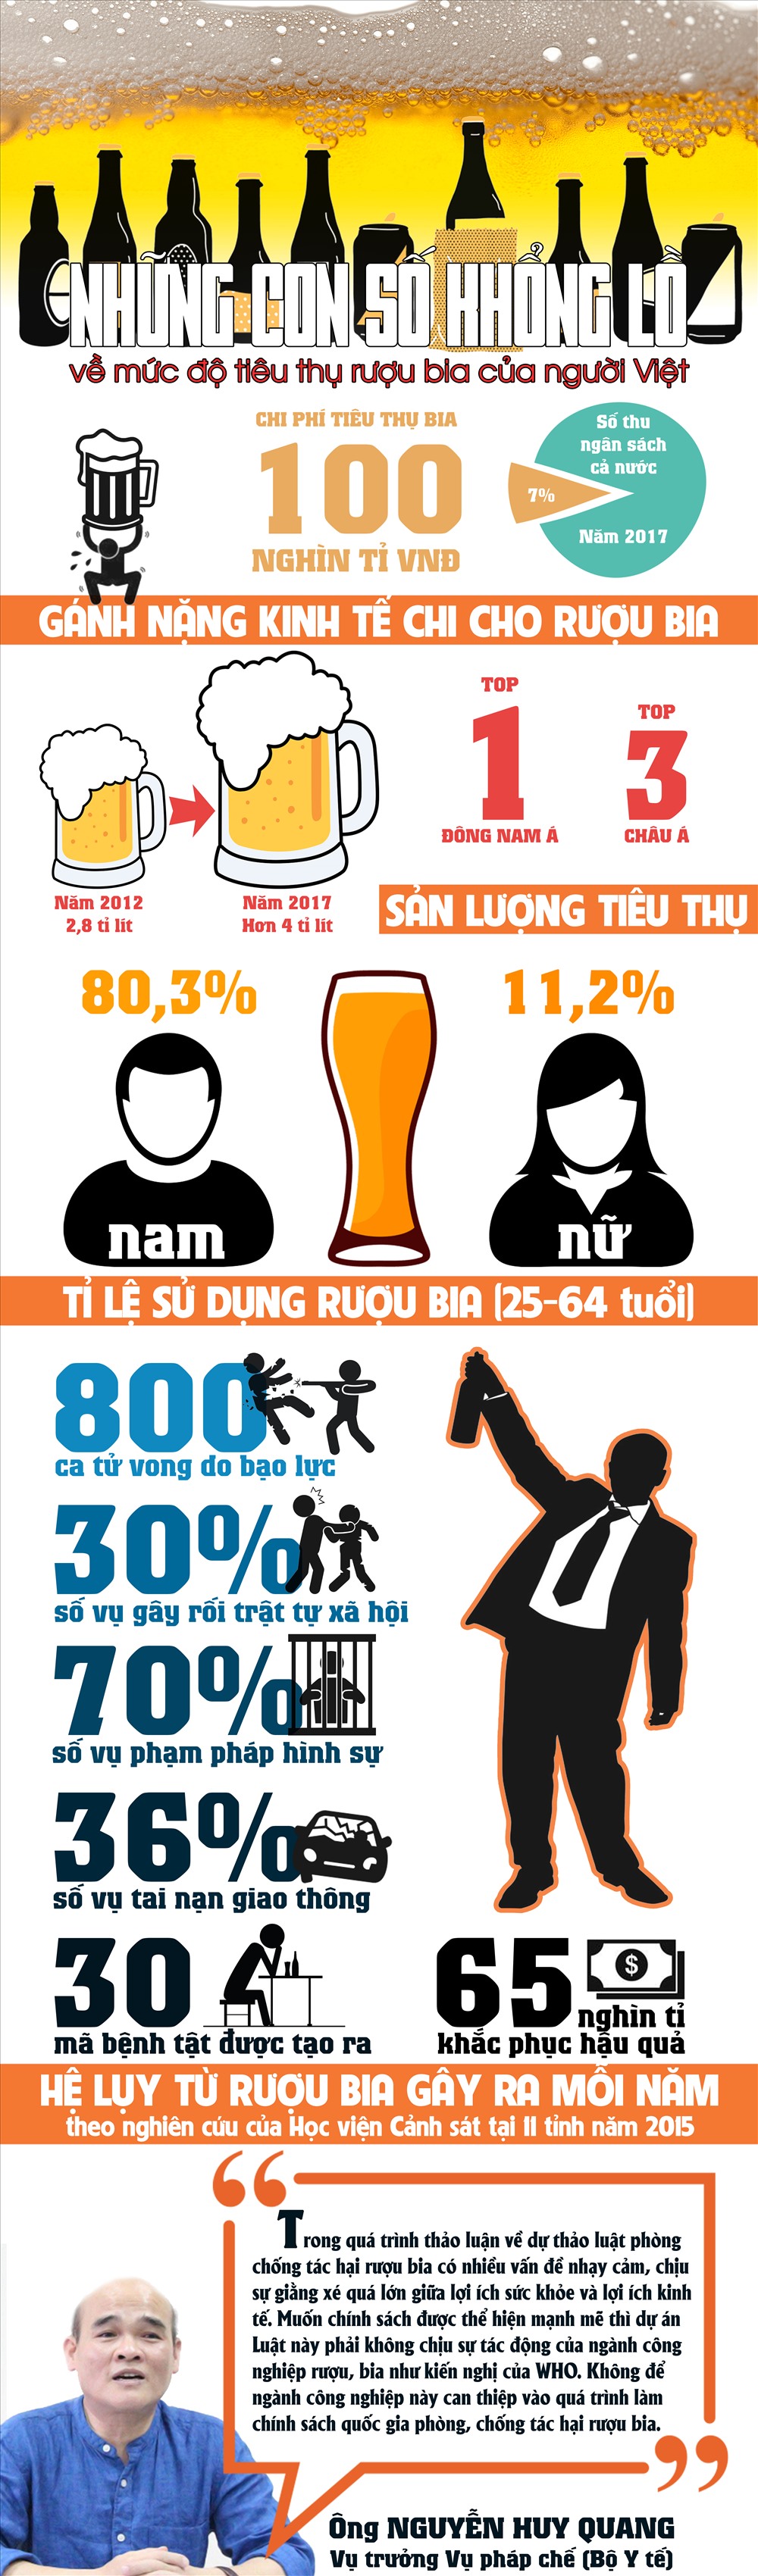 Sốc với những con số khổng lồ về mức độ tiêu thụ rượu bia của người Việt - Ảnh 1.